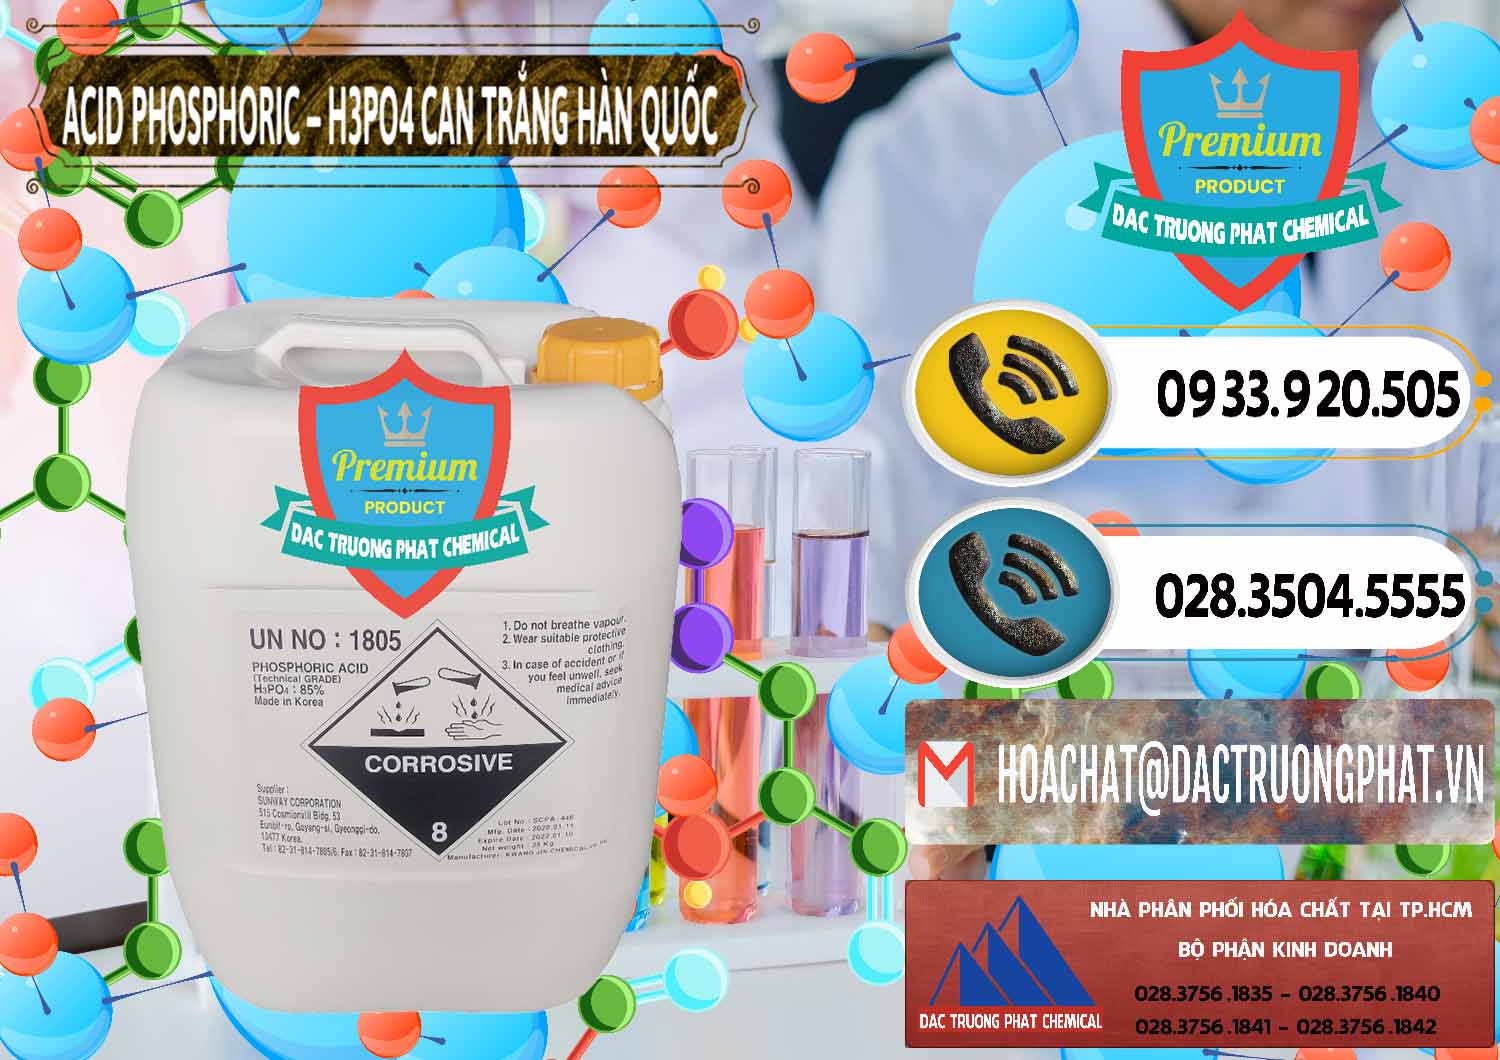 Cty chuyên kinh doanh & bán Acid Phosphoric - Axit Phosphoric H3PO4 Can Trắng Hàn Quốc Korea - 0017 - Nơi chuyên nhập khẩu & cung cấp hóa chất tại TP.HCM - hoachatdetnhuom.vn